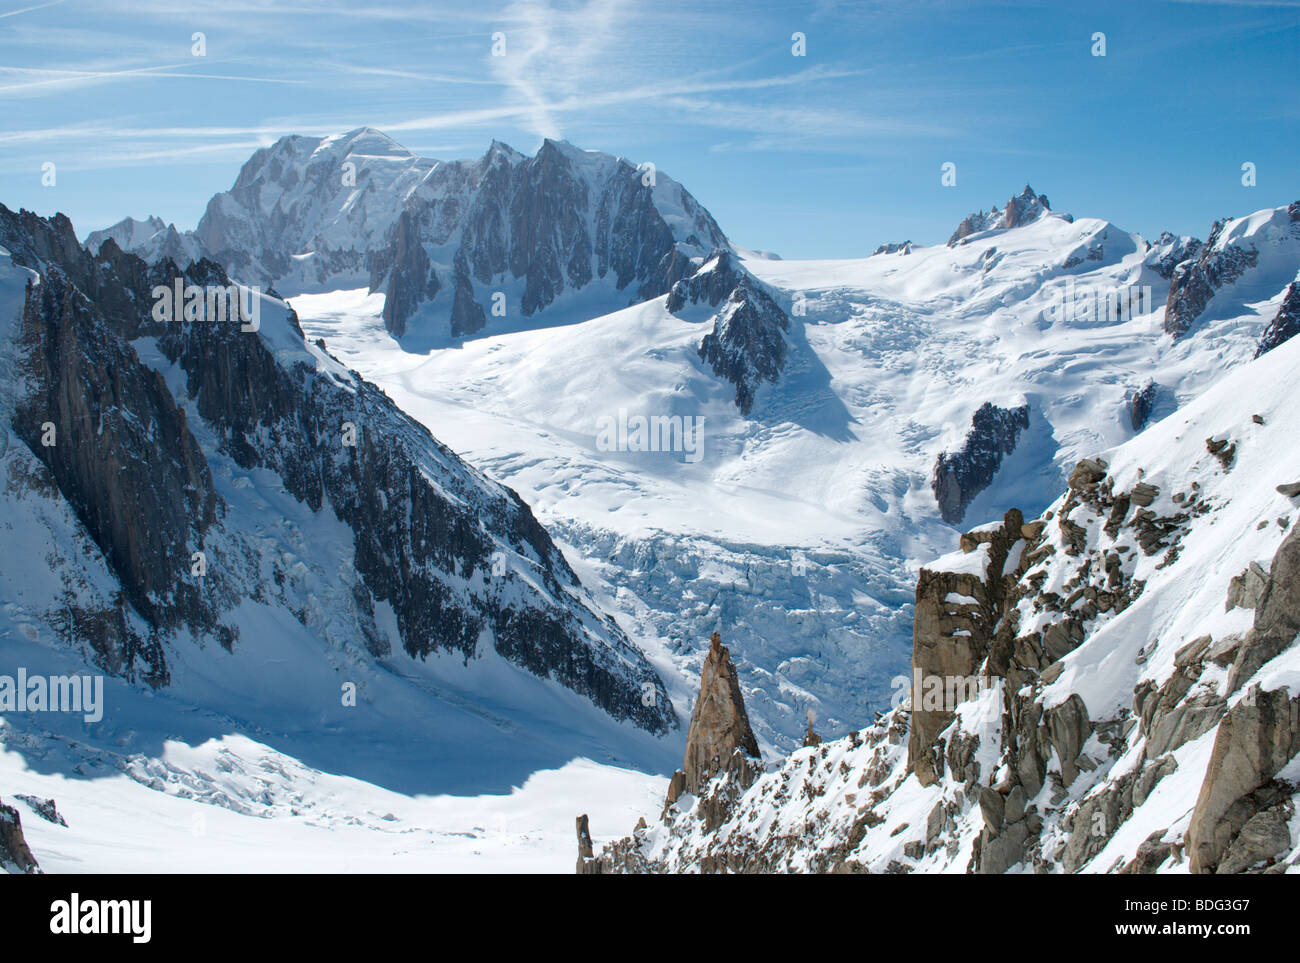 Der Mont Blanc, Mt Blanc du Tacul, The Vallée Blanche und Aiguille du Midi aus gesehen in der Nähe von Aiguille du Tacul, Chamonix, Frankreich Stockfoto